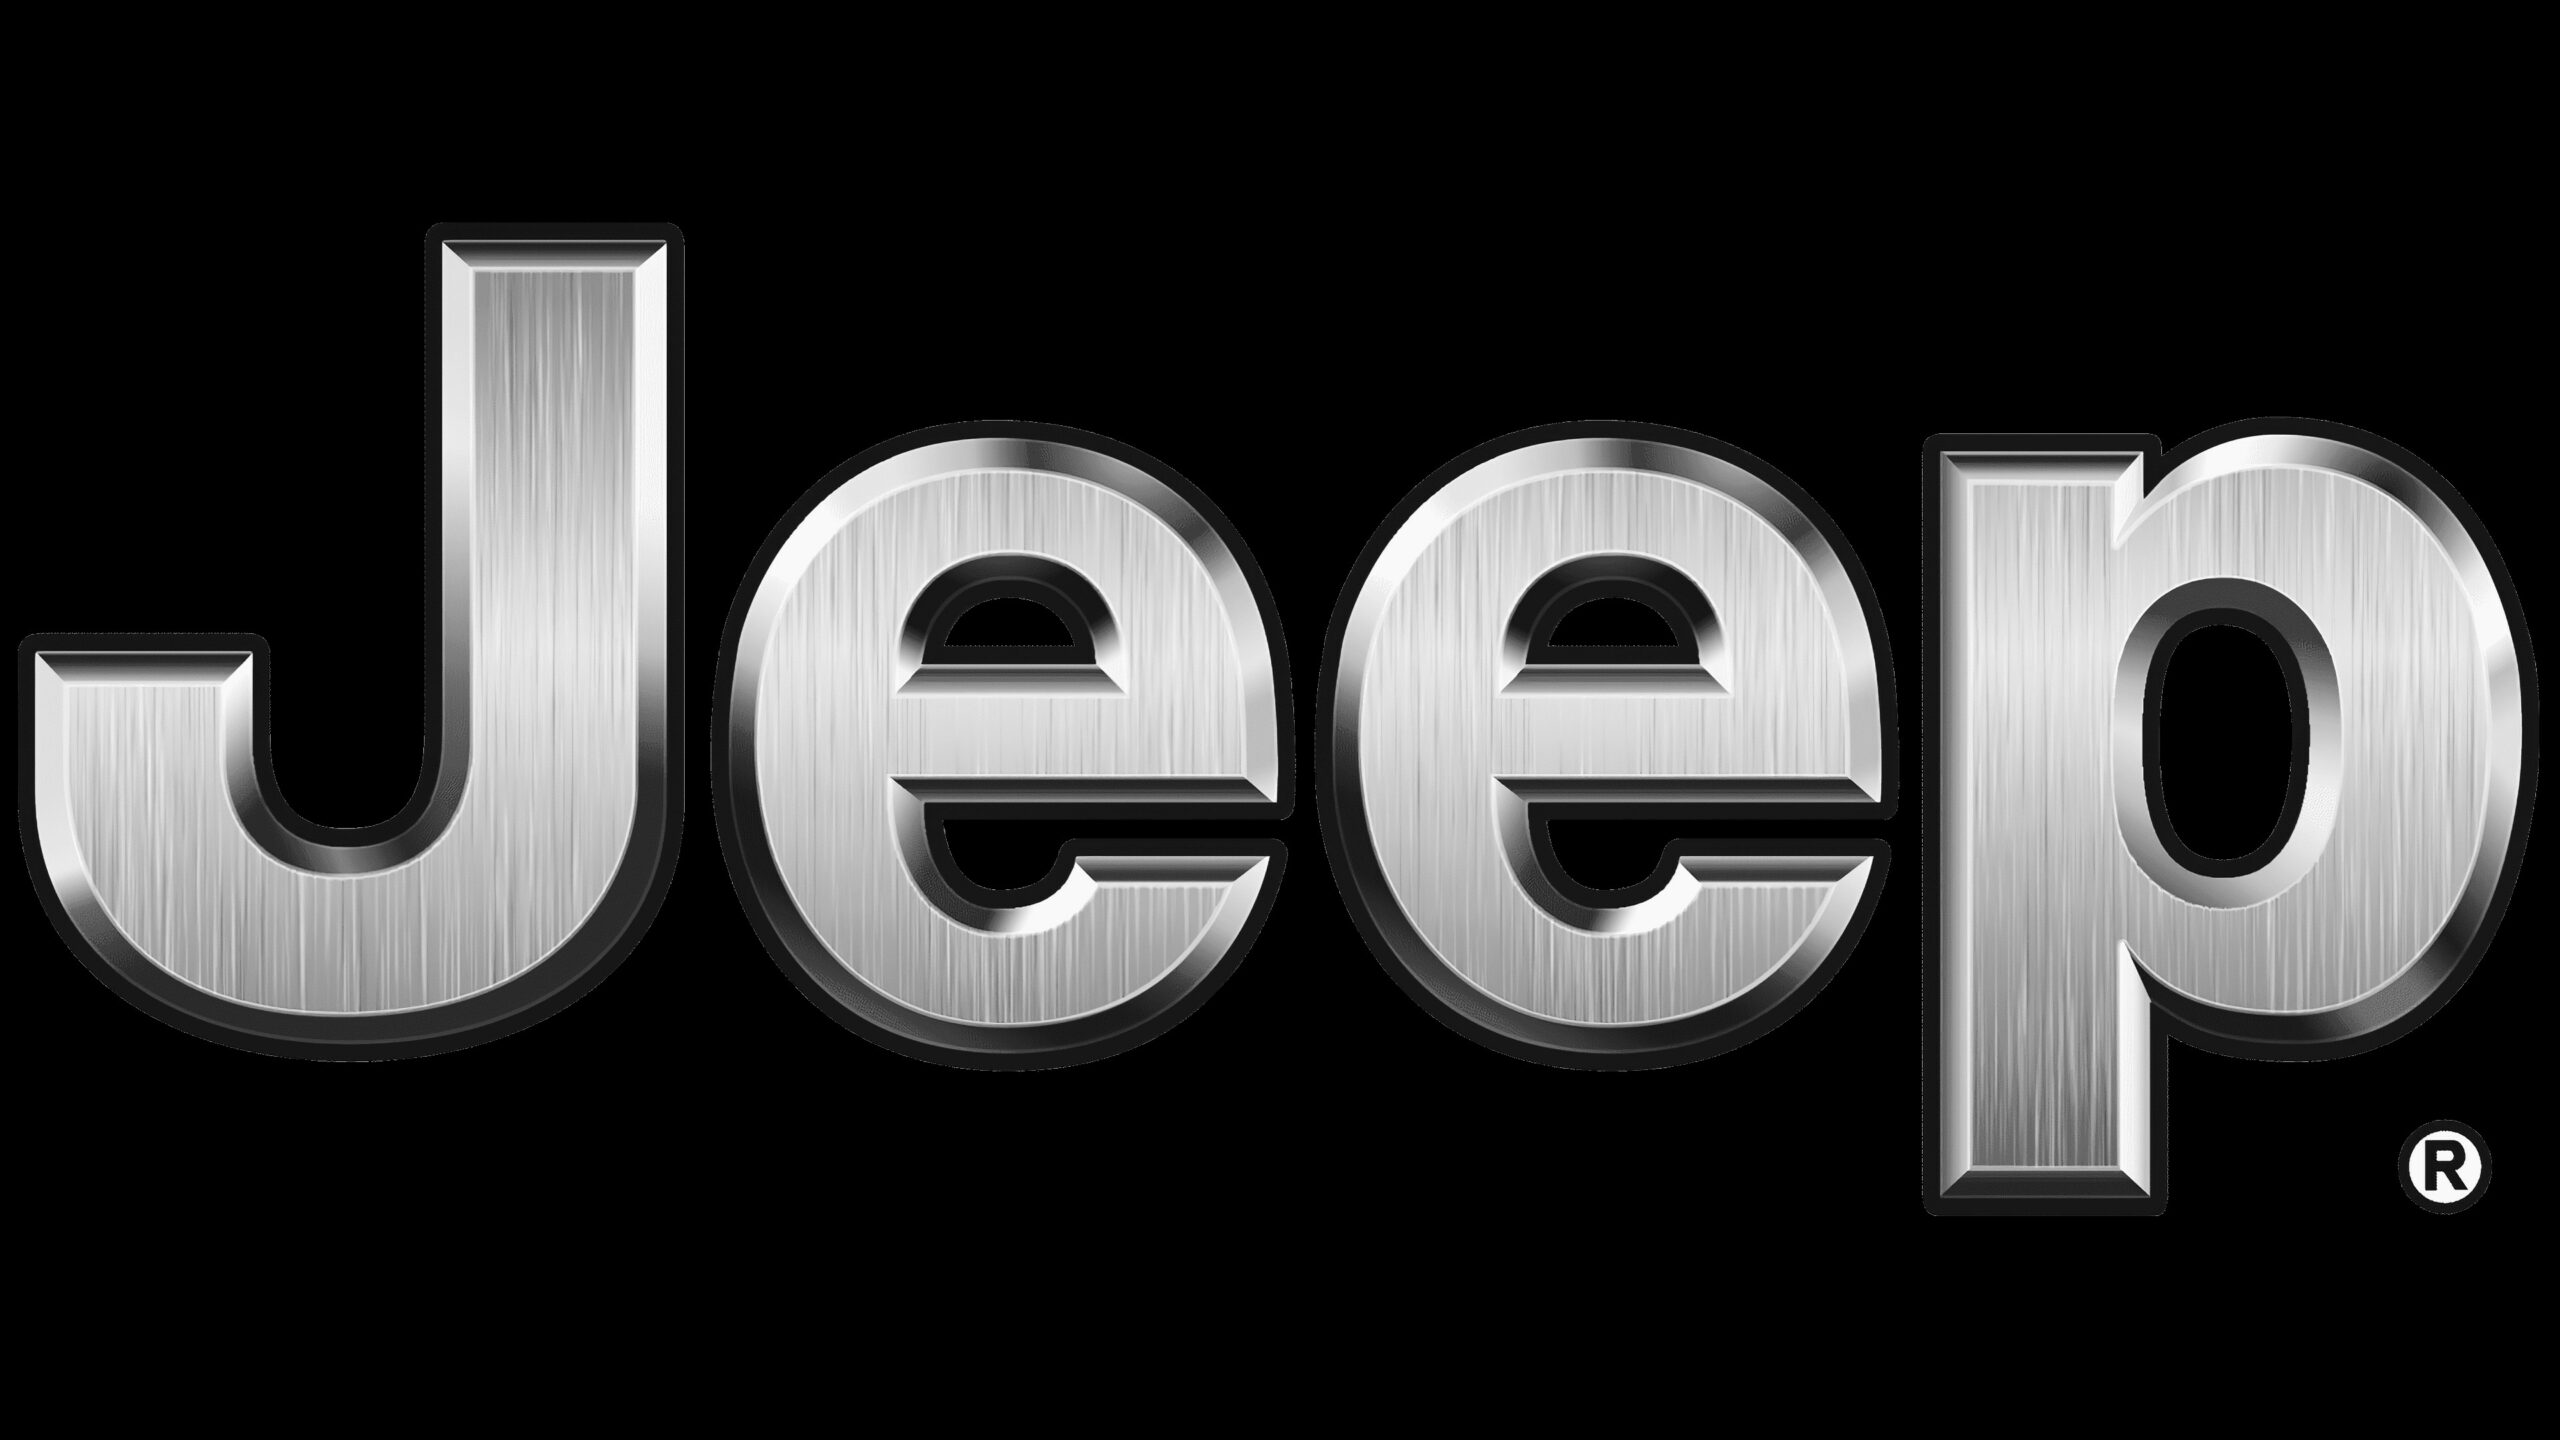 Jovem aprendiz jeep – quais são os benefícios